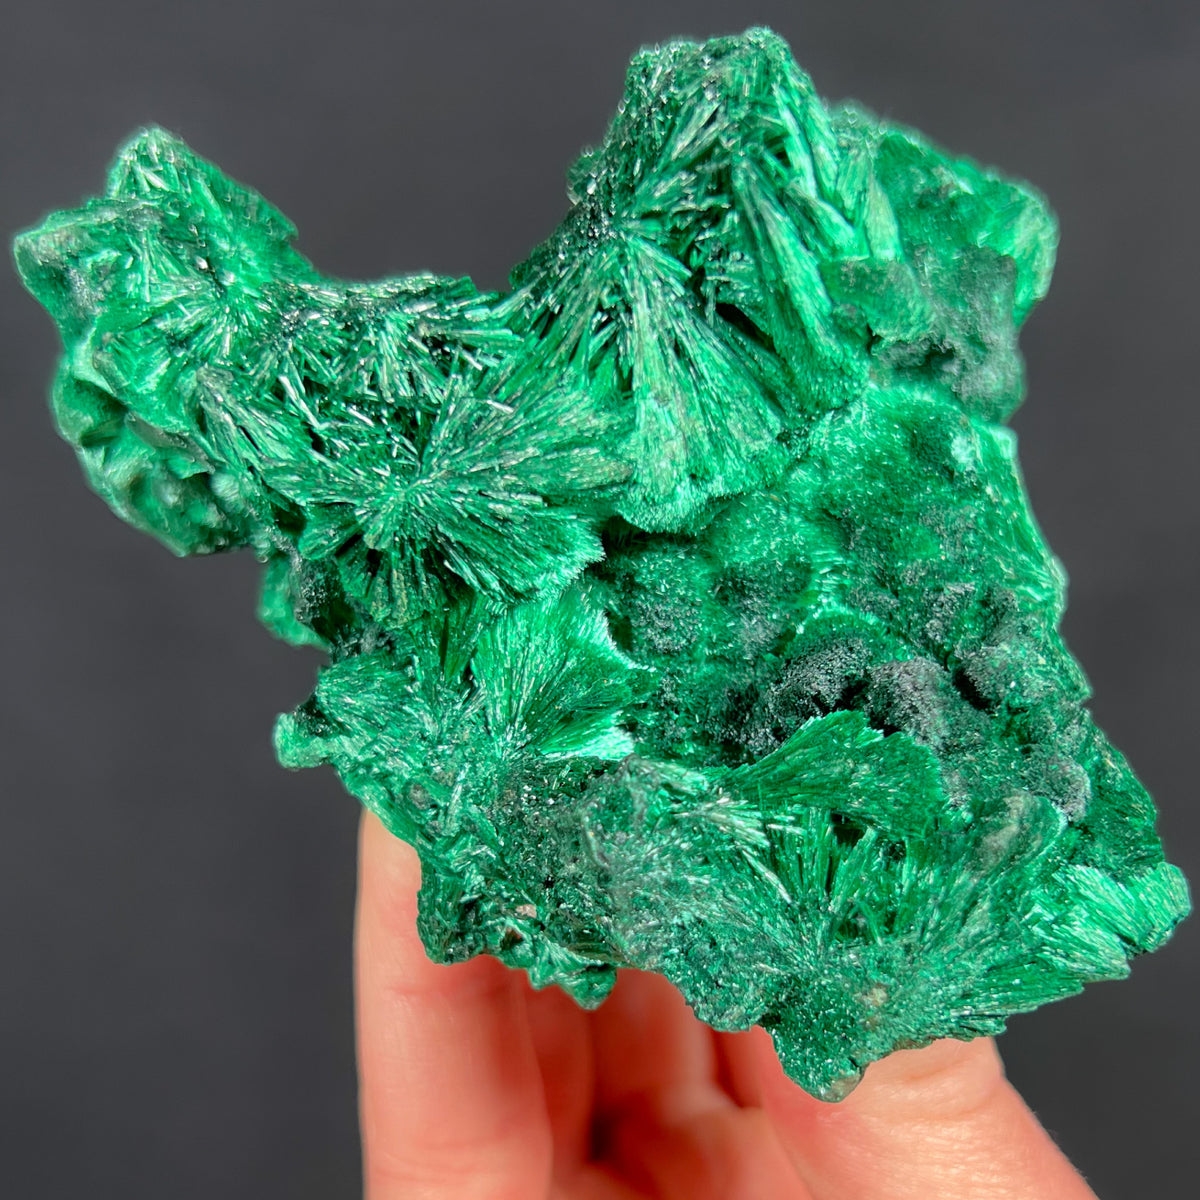 Velvety Green Malachite Crystal Specimen